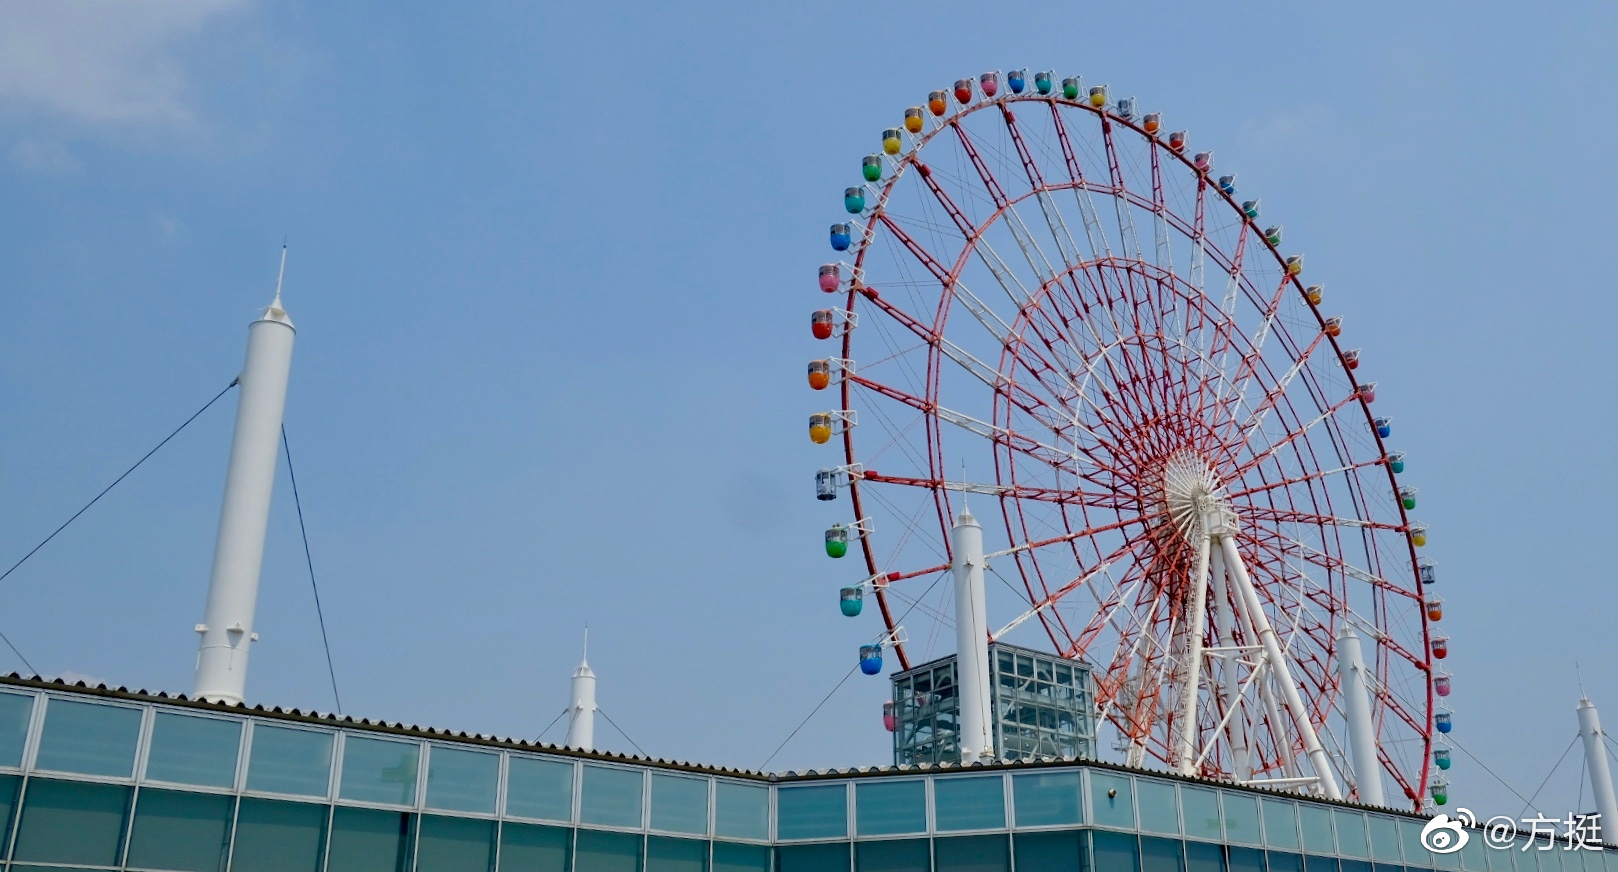 【携程攻略】东京调色板城大摩天轮景点,台场一个年轻人游玩的好地方，从白天玩到黑夜，绝对让你有种一天玩不…